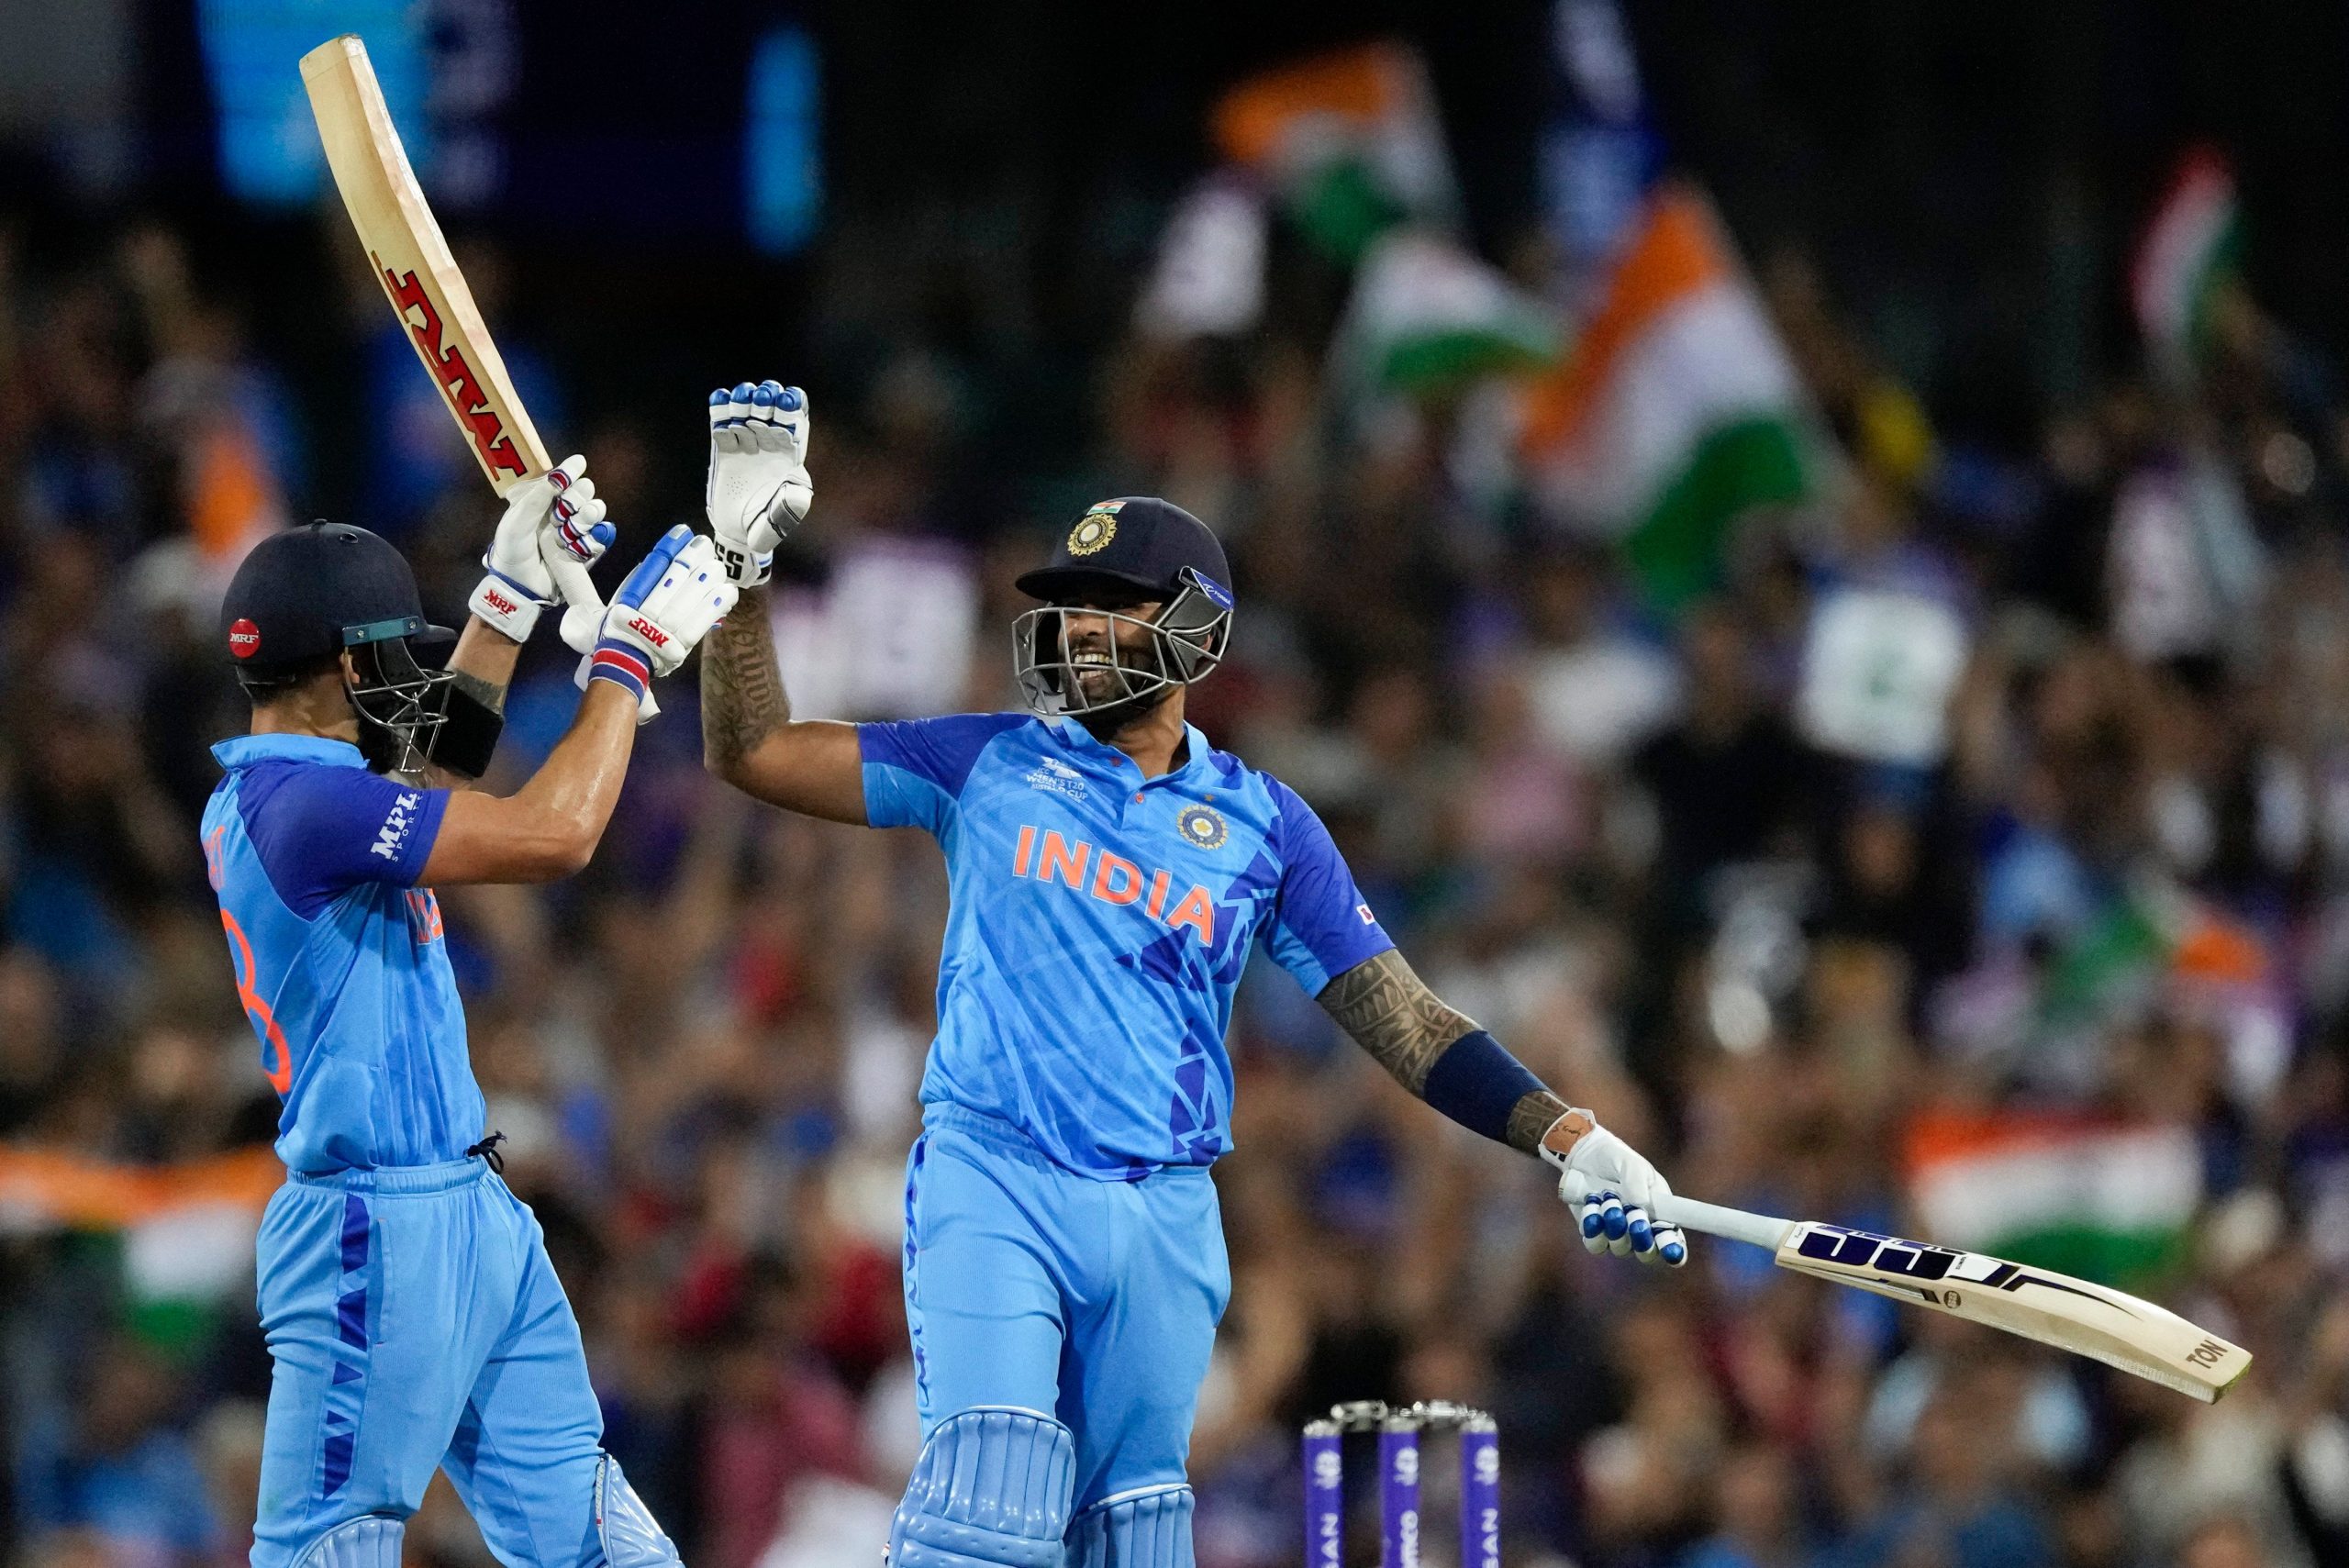 ICC Team of the Tournament में विराट के साथ भारत के 3 खिलाड़ी शामिल